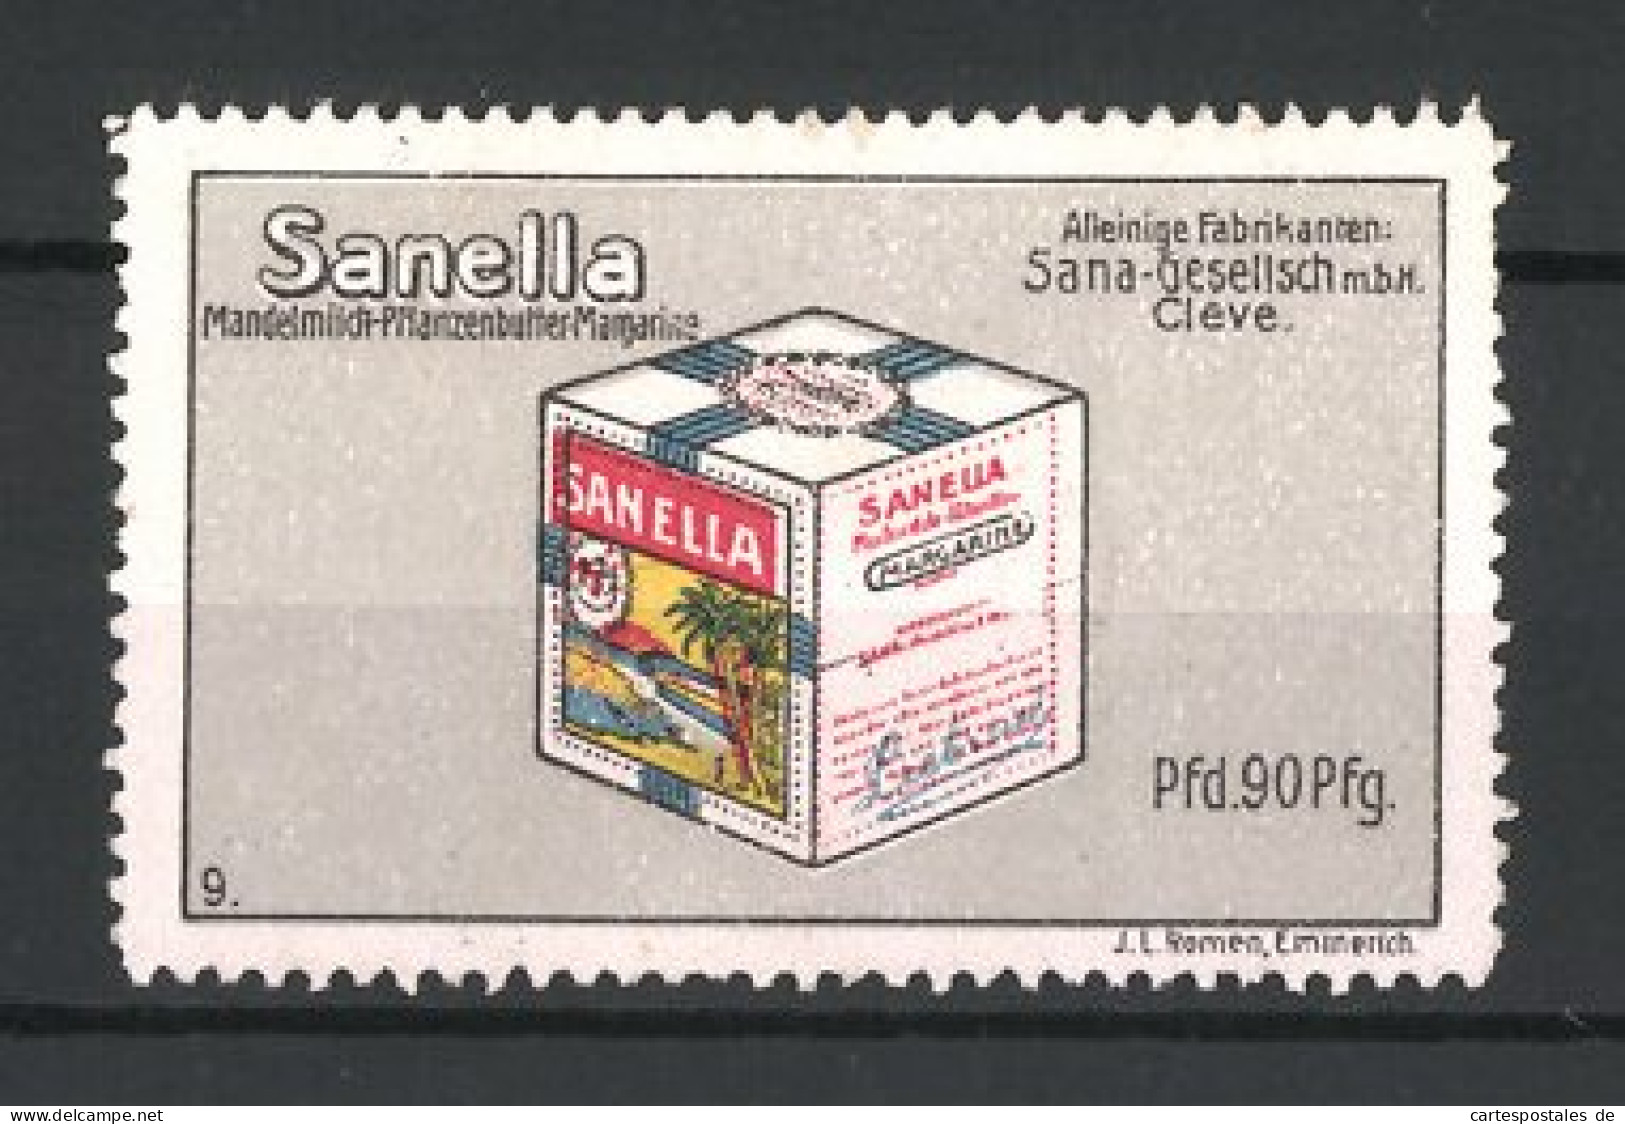 Reklamemarke Sanella Mandelmilch-Margarine, Sana-Gesellschaft, Cleve, Margarinewürfel  - Cinderellas